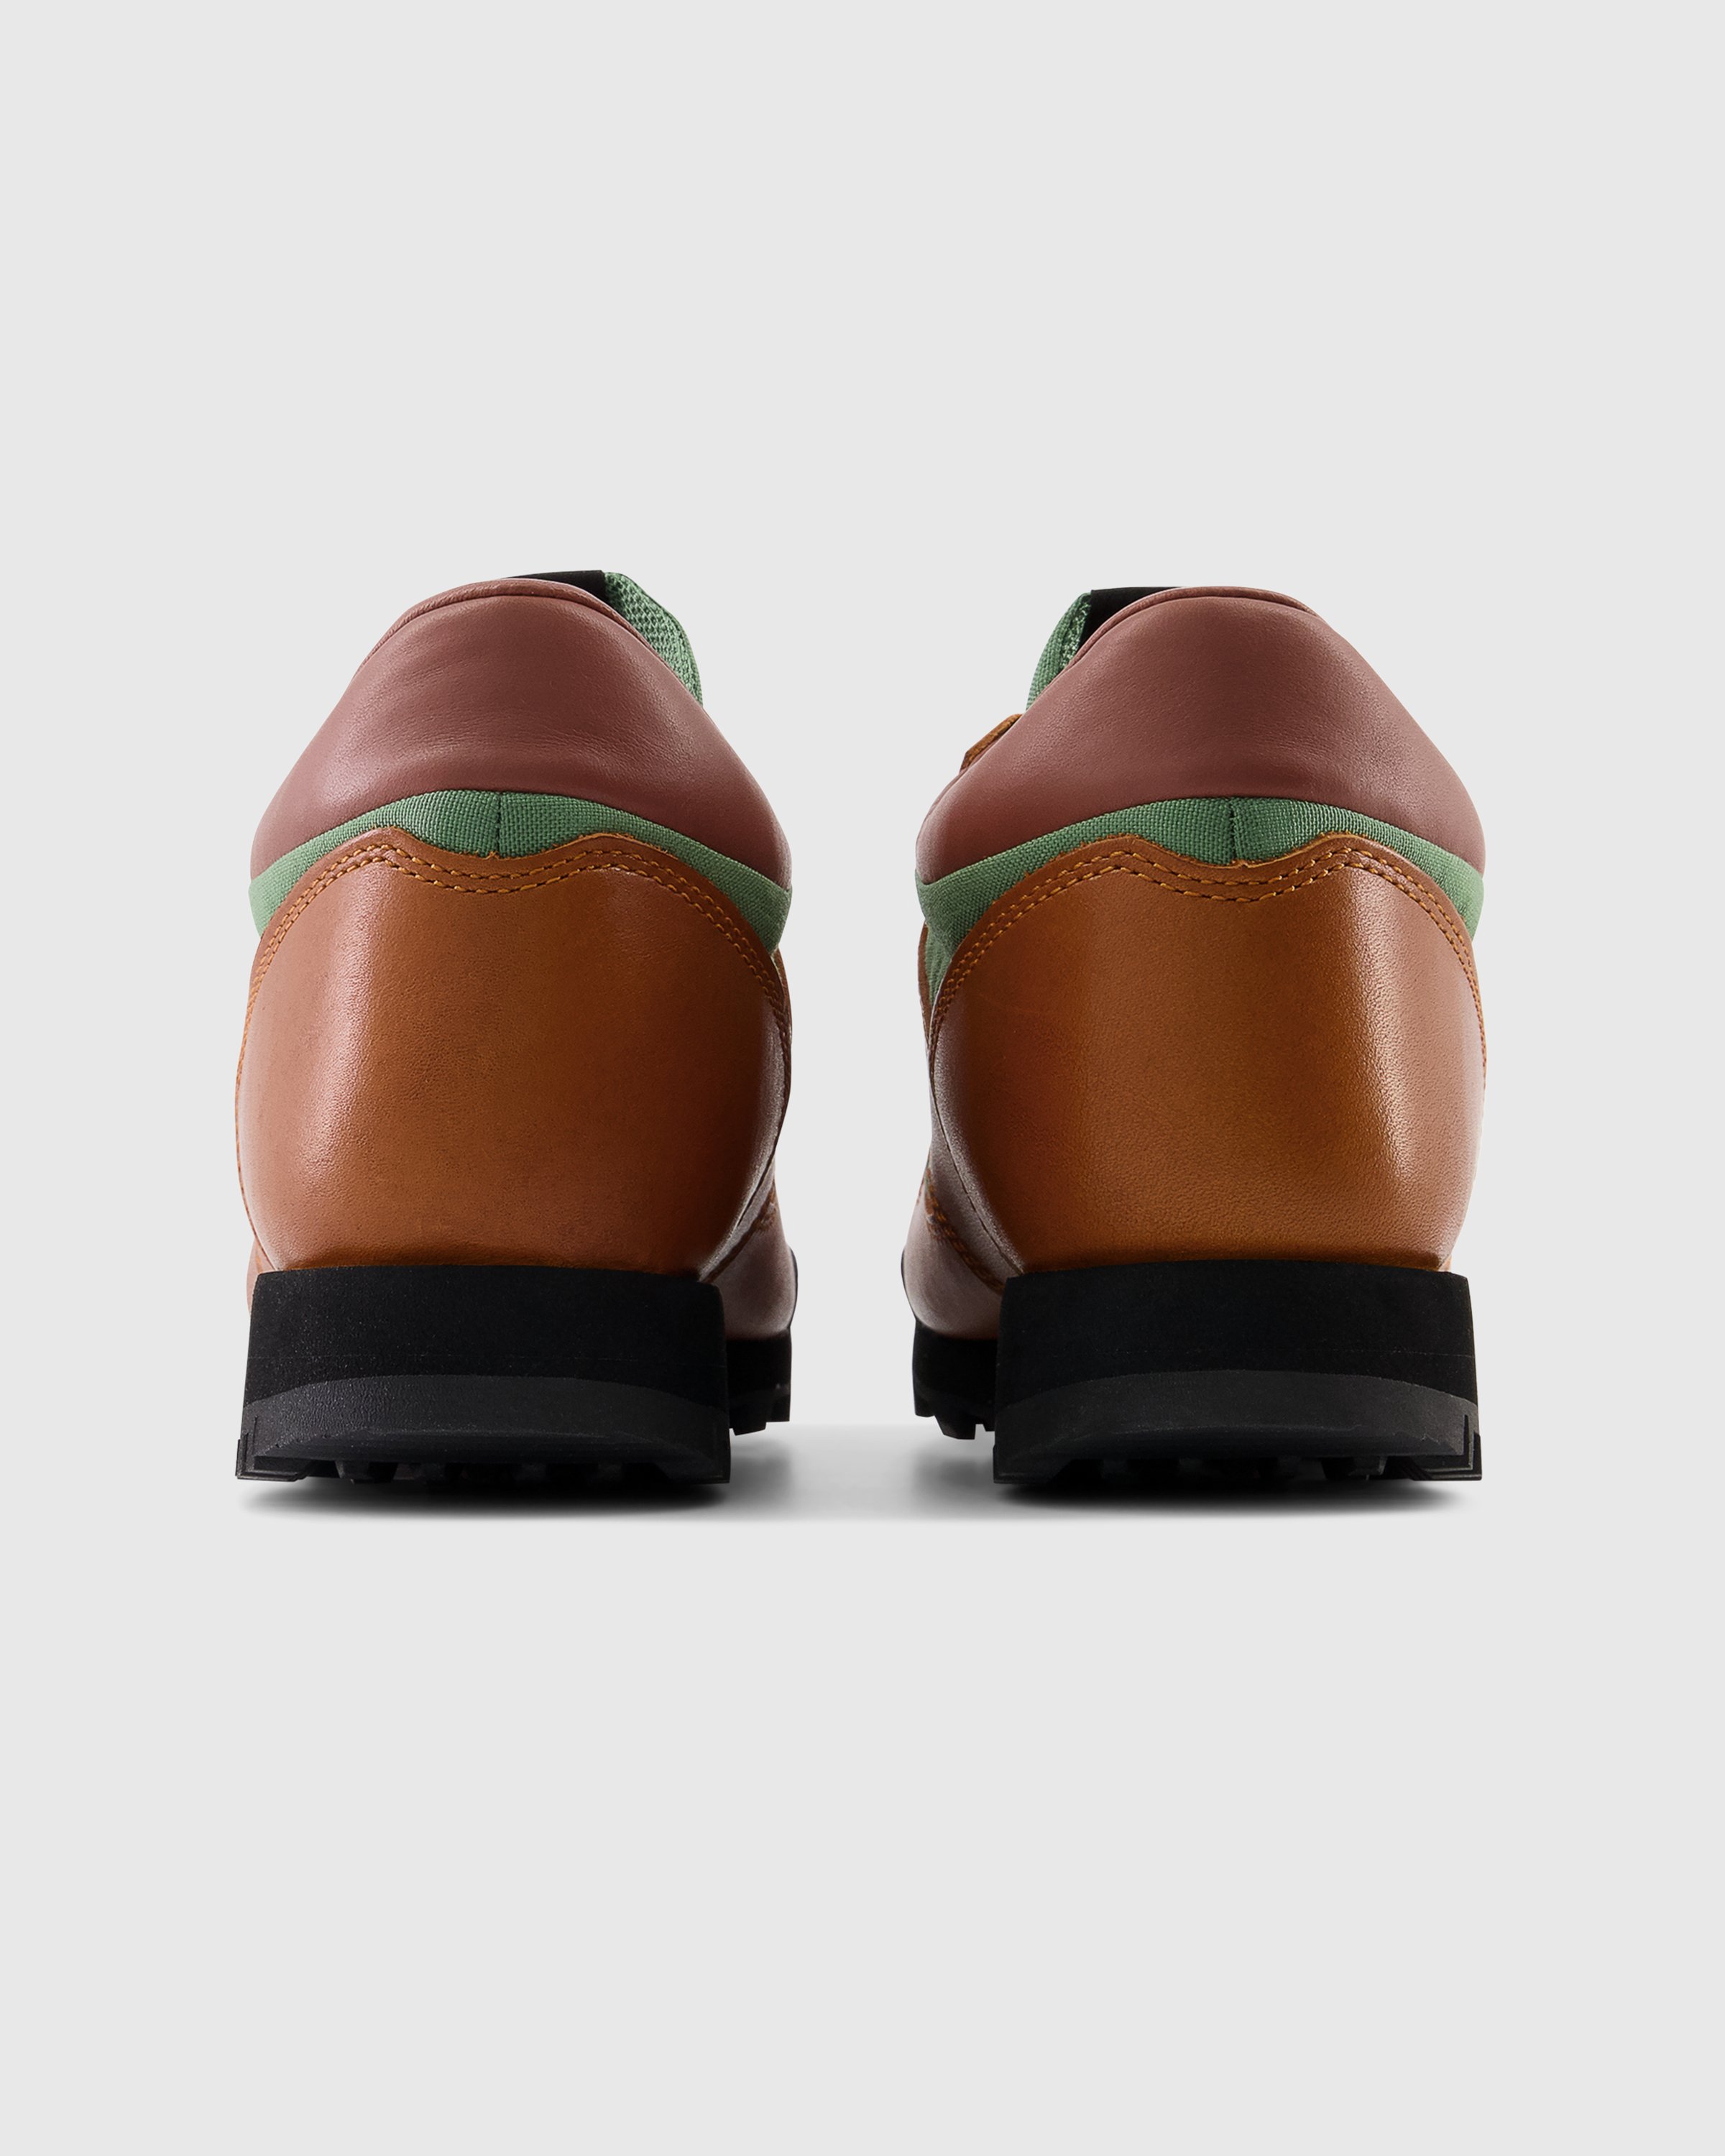 New Balance - UALGSBB Rainier Brown - Footwear - Brown - Image 5